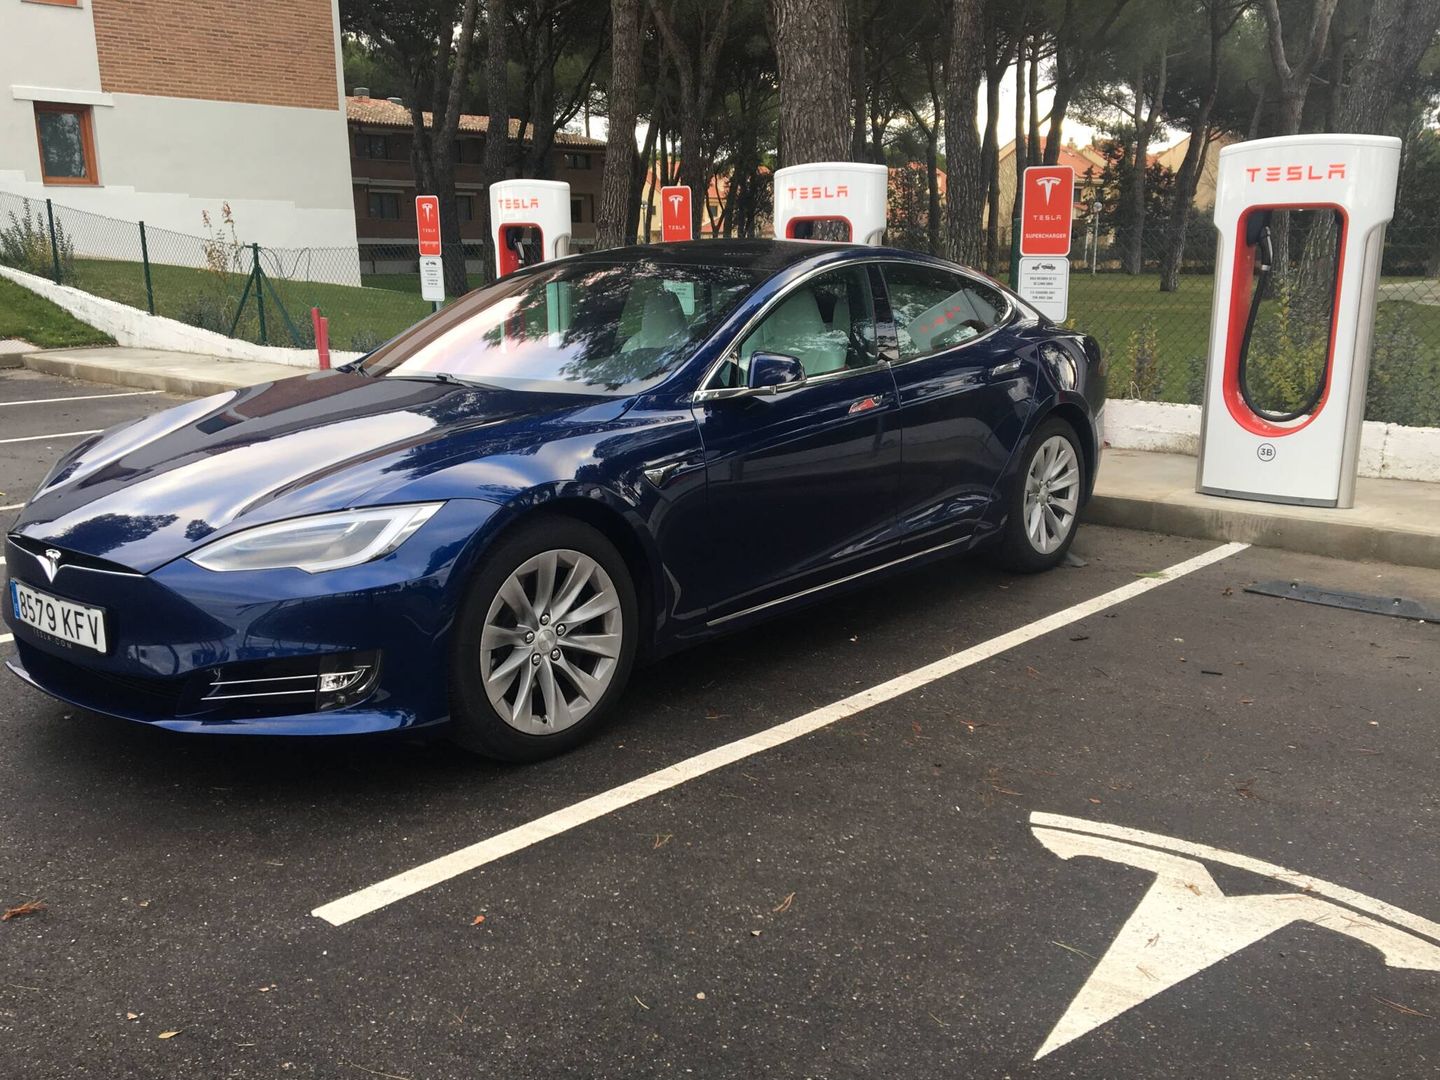 La red Supercharger de Tesla está abierta en España a clientes de otras marcas. En Norteamérica no.